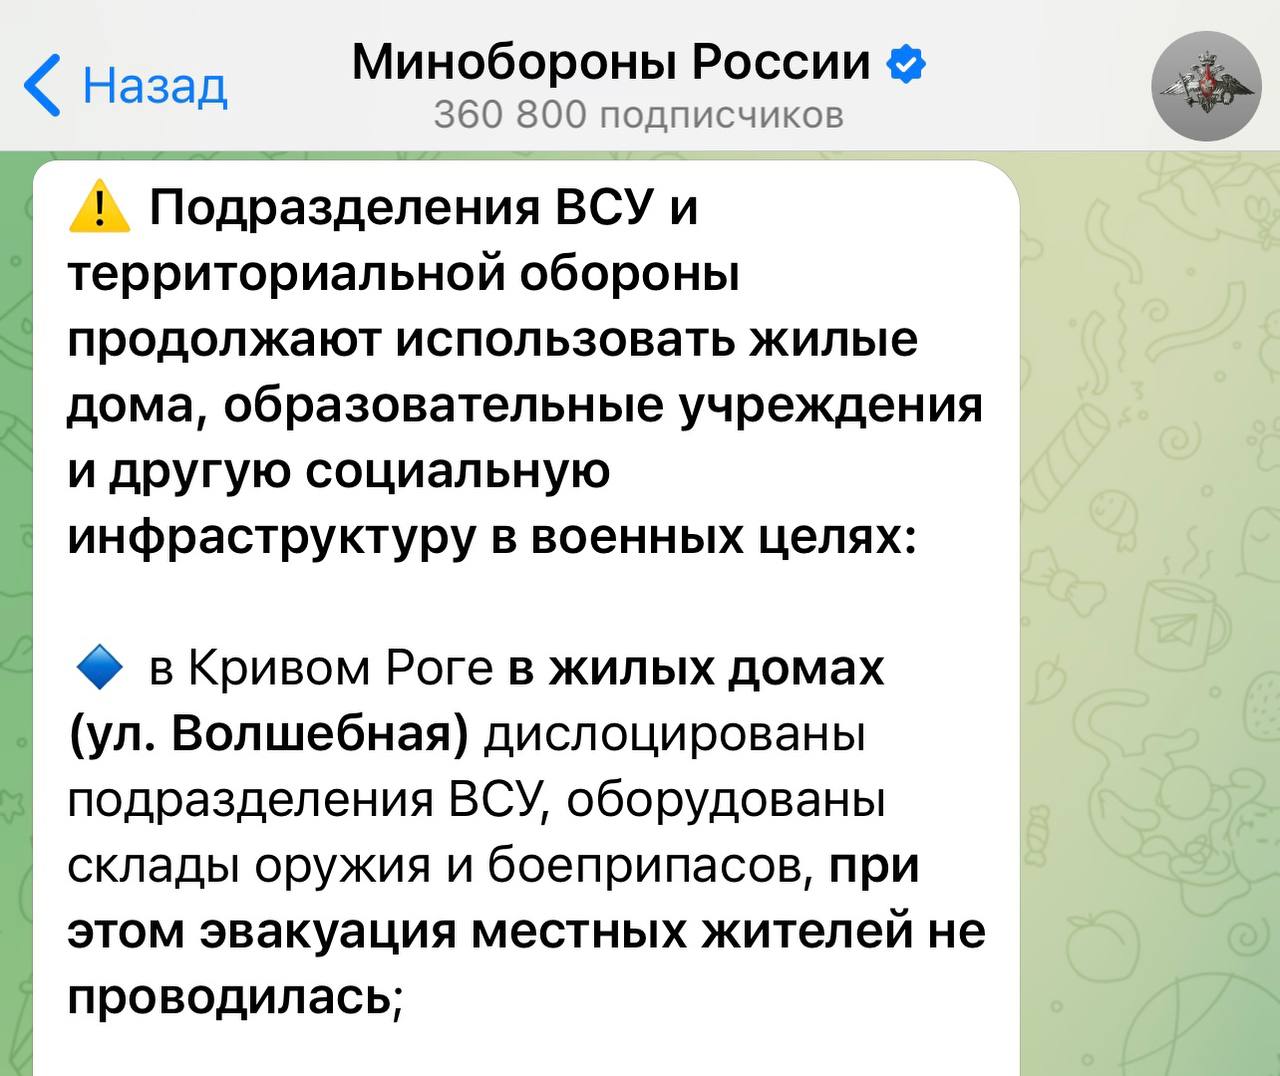 Также Минобороны РФ распространяет фейки о Кривом Роге - || фото: t.me/stop_fake_dp